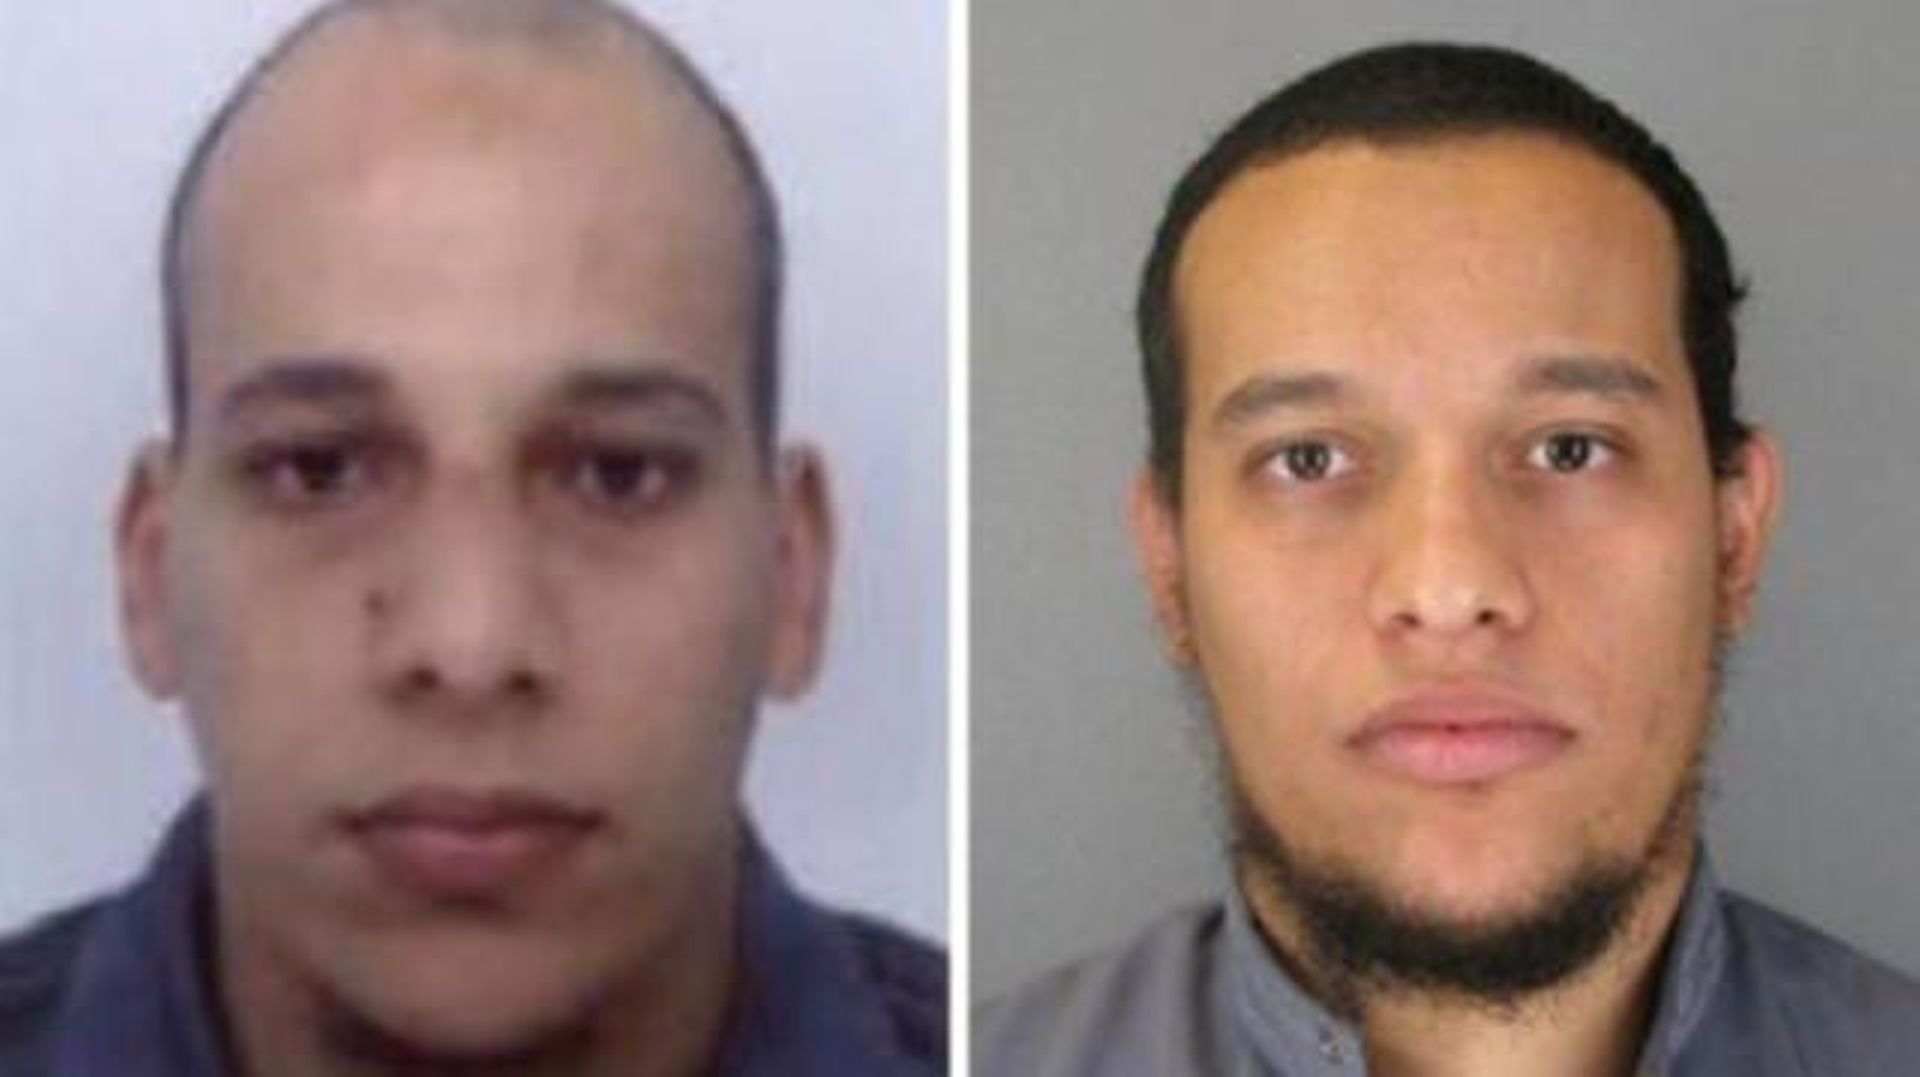 Charlie Hebdo - Les deux suspects étaient sur la liste noire américaine de terroristes